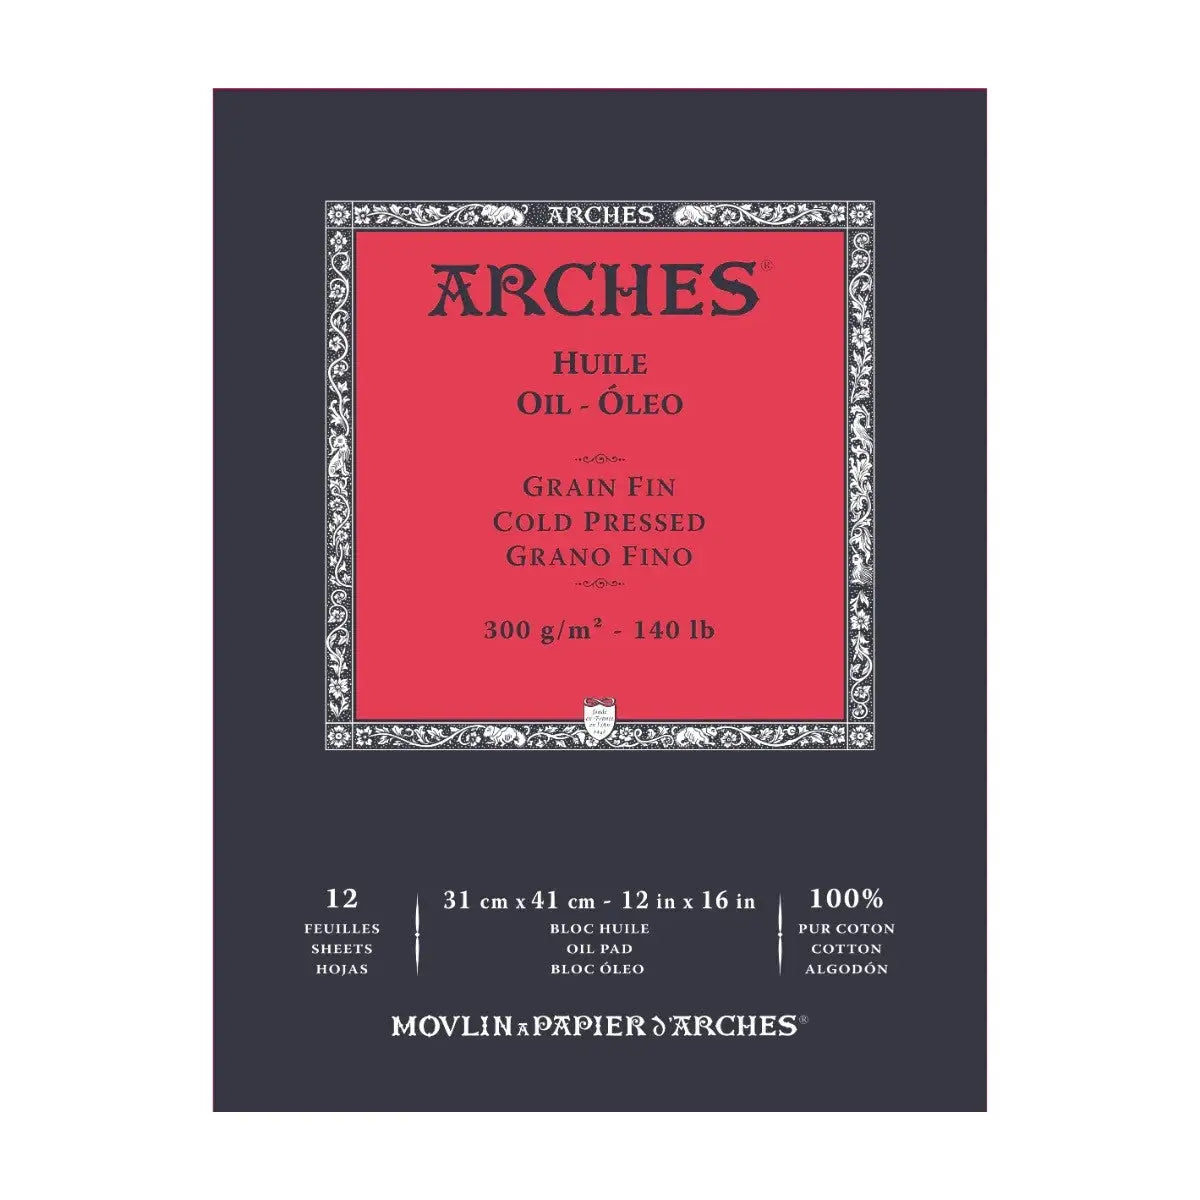 Arches Oil Huile White Fine Grain,Cold pressed,300GSM,Short Glued Pad,12SHT-31x41cm Arches